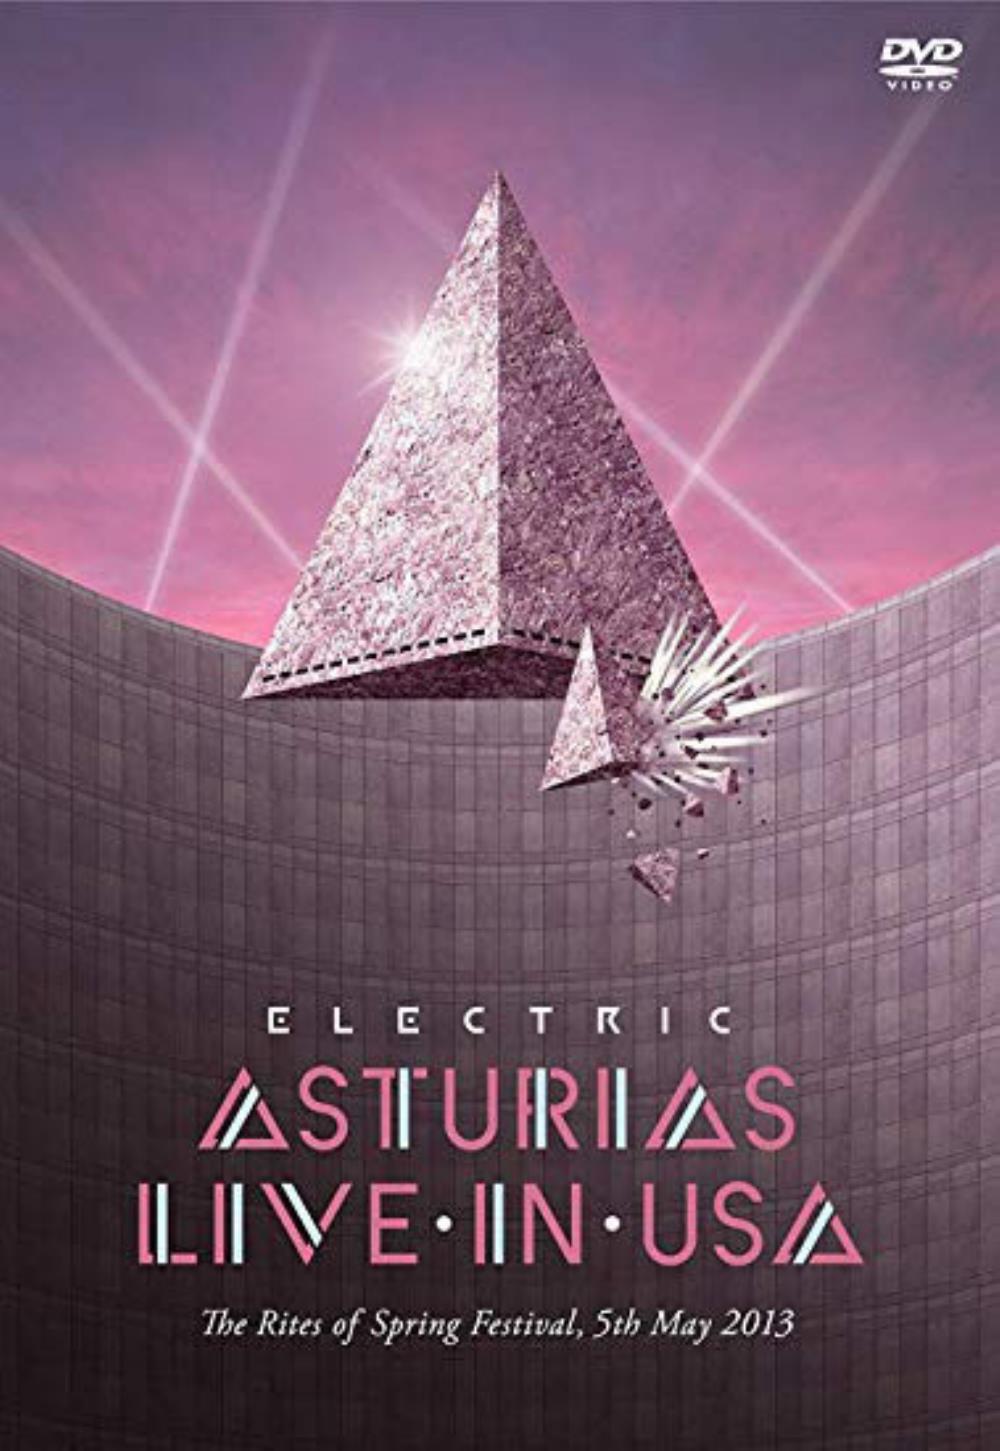 Asturias Electric Asturias: Live in USA album cover